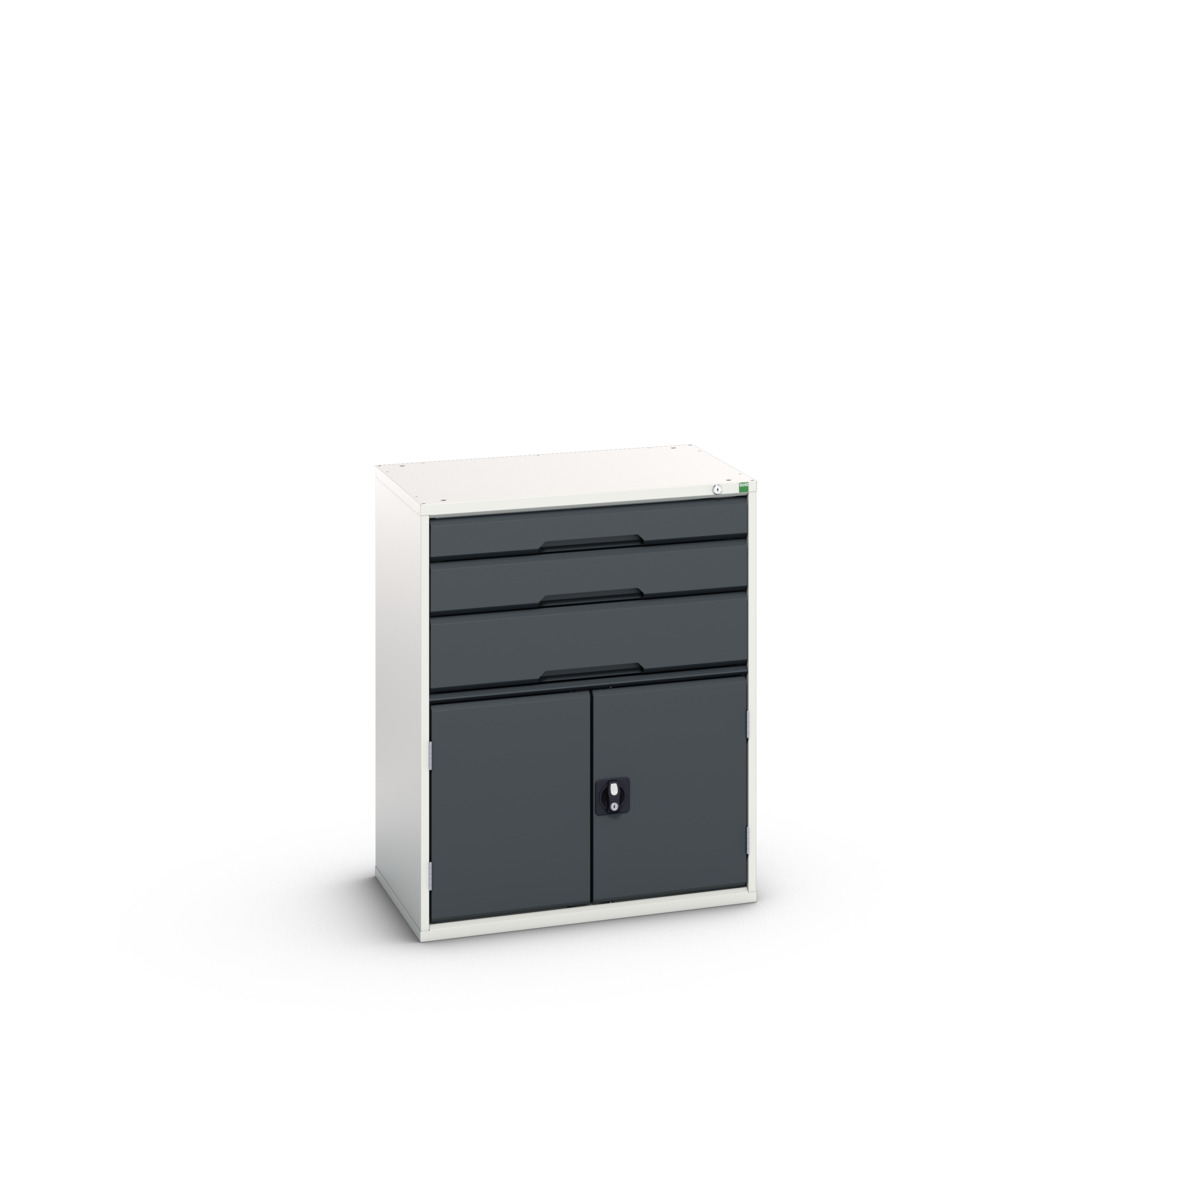 16925461. - verso drawer-door cabinet